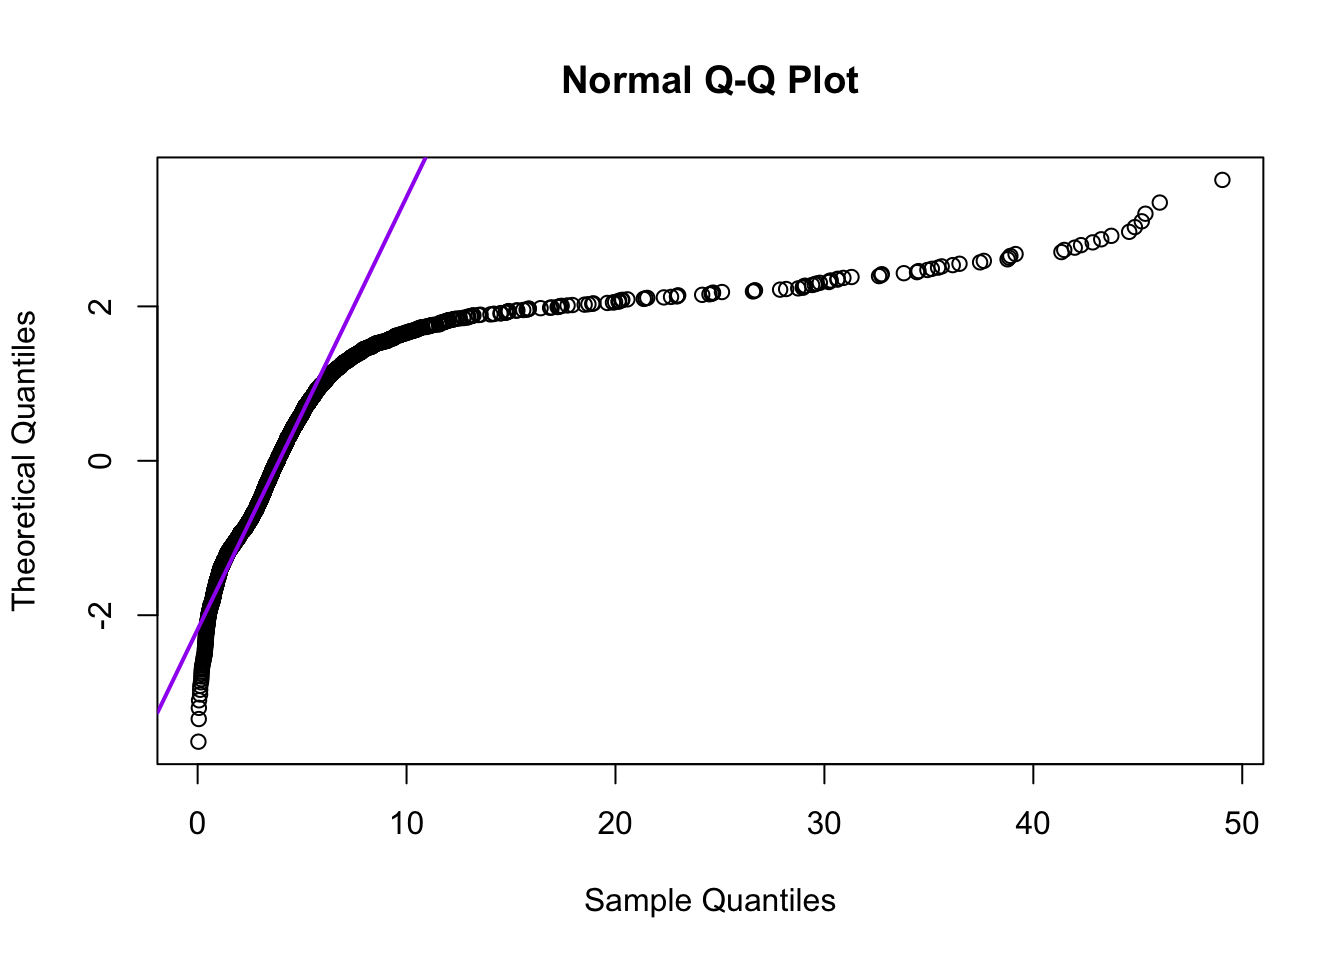 Quantile-quantile-plot van de duren van muzieknummers in mijn digitale muziekbibliotheek.